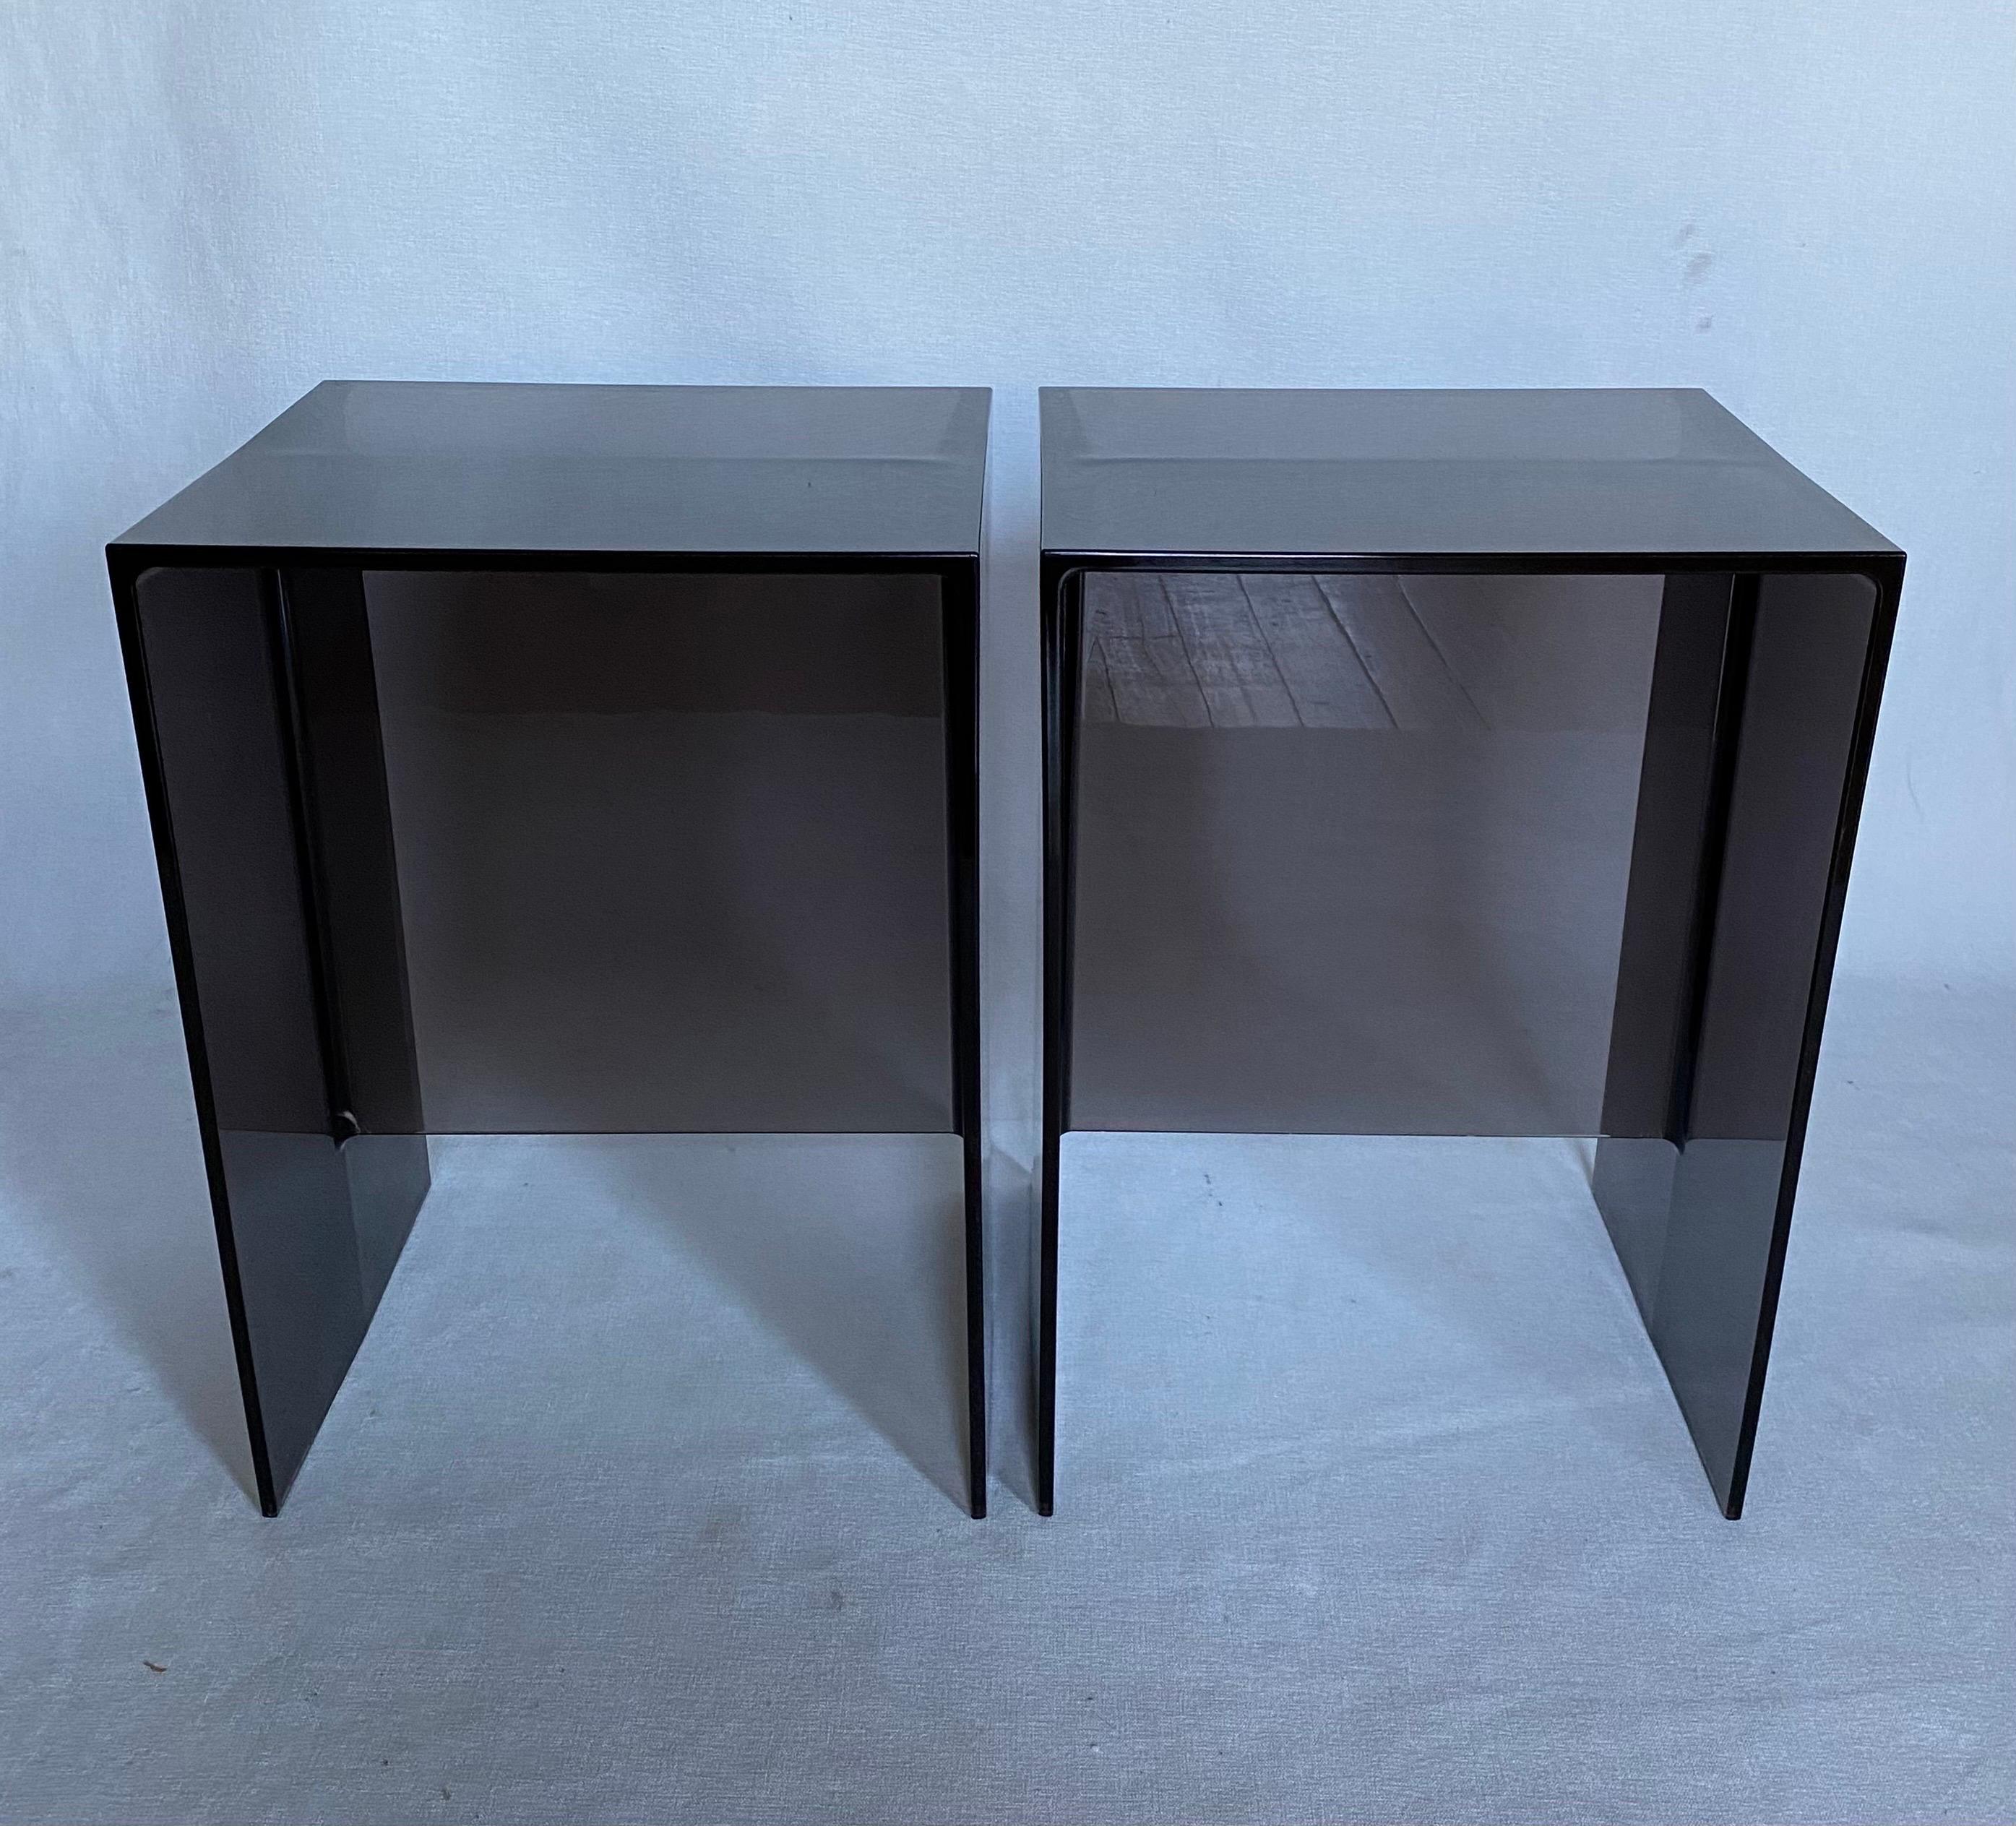 Zwei geometrische Max-Beam-Beistelltische von Ludovica + Roberto Palomba für Kartell. Diese modernen, transparenten, rauchgrauen Beistelltische aus Acryl sind auch stabil genug, um als Hocker für zusätzliche Sitzgelegenheiten verwendet zu werden.